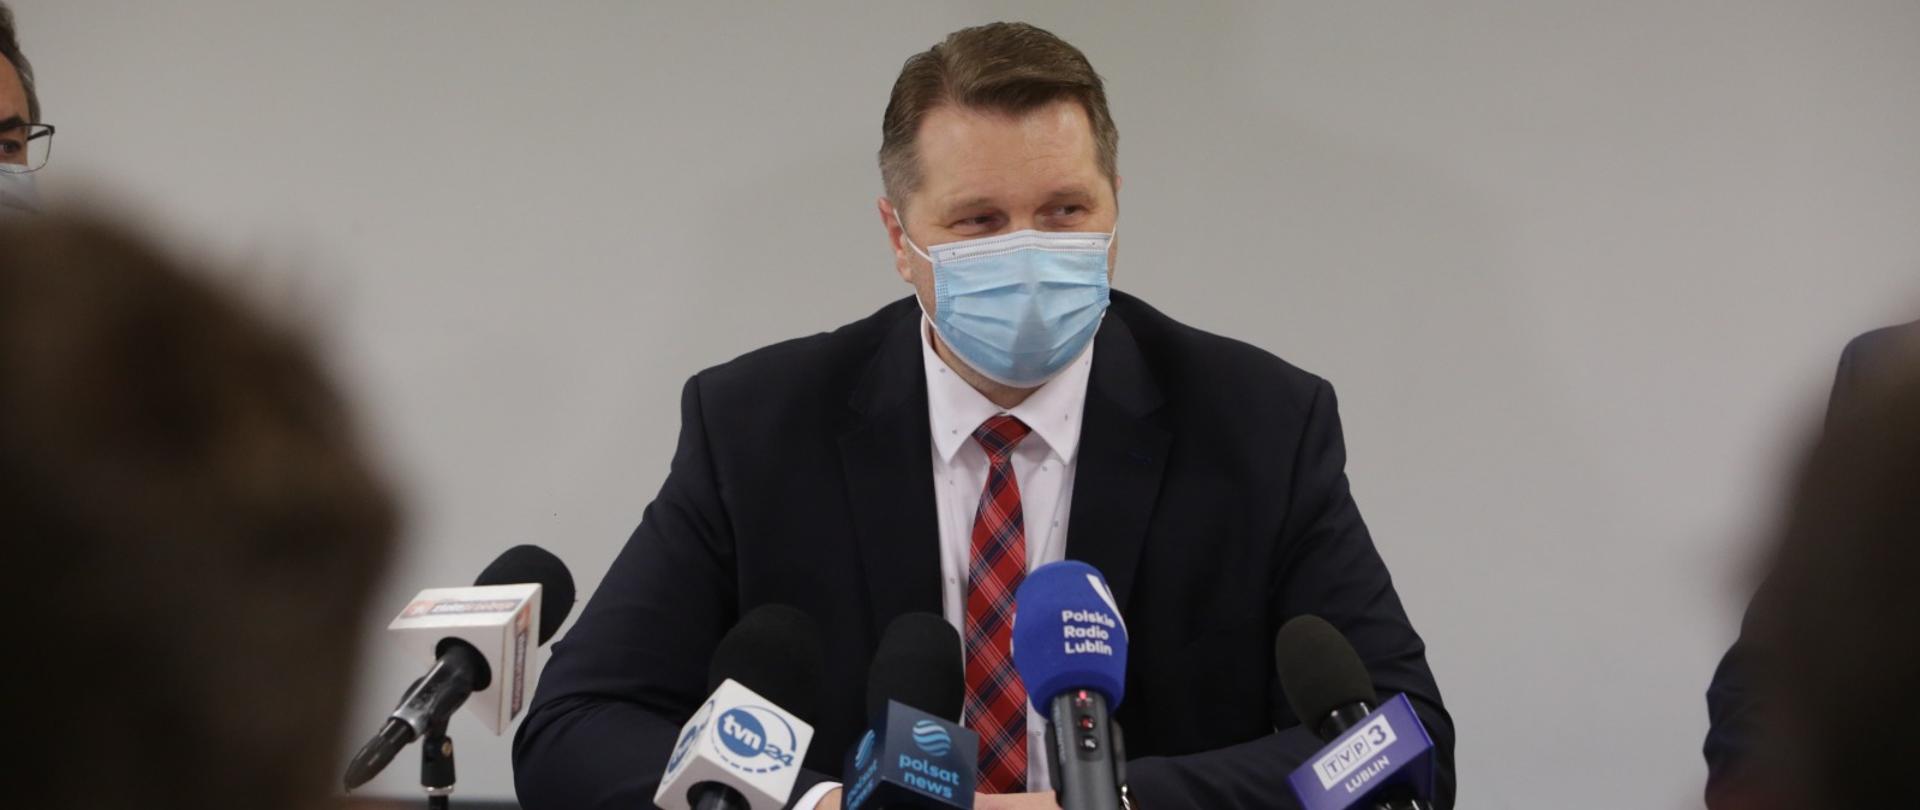 konferencja prasowa z udziałem ministra czarnka po przyjęciu szczepionki w szpitalu w Lublinie. minister odpowiada do mikrofonu na siedząco na pytania dziennikarzy 